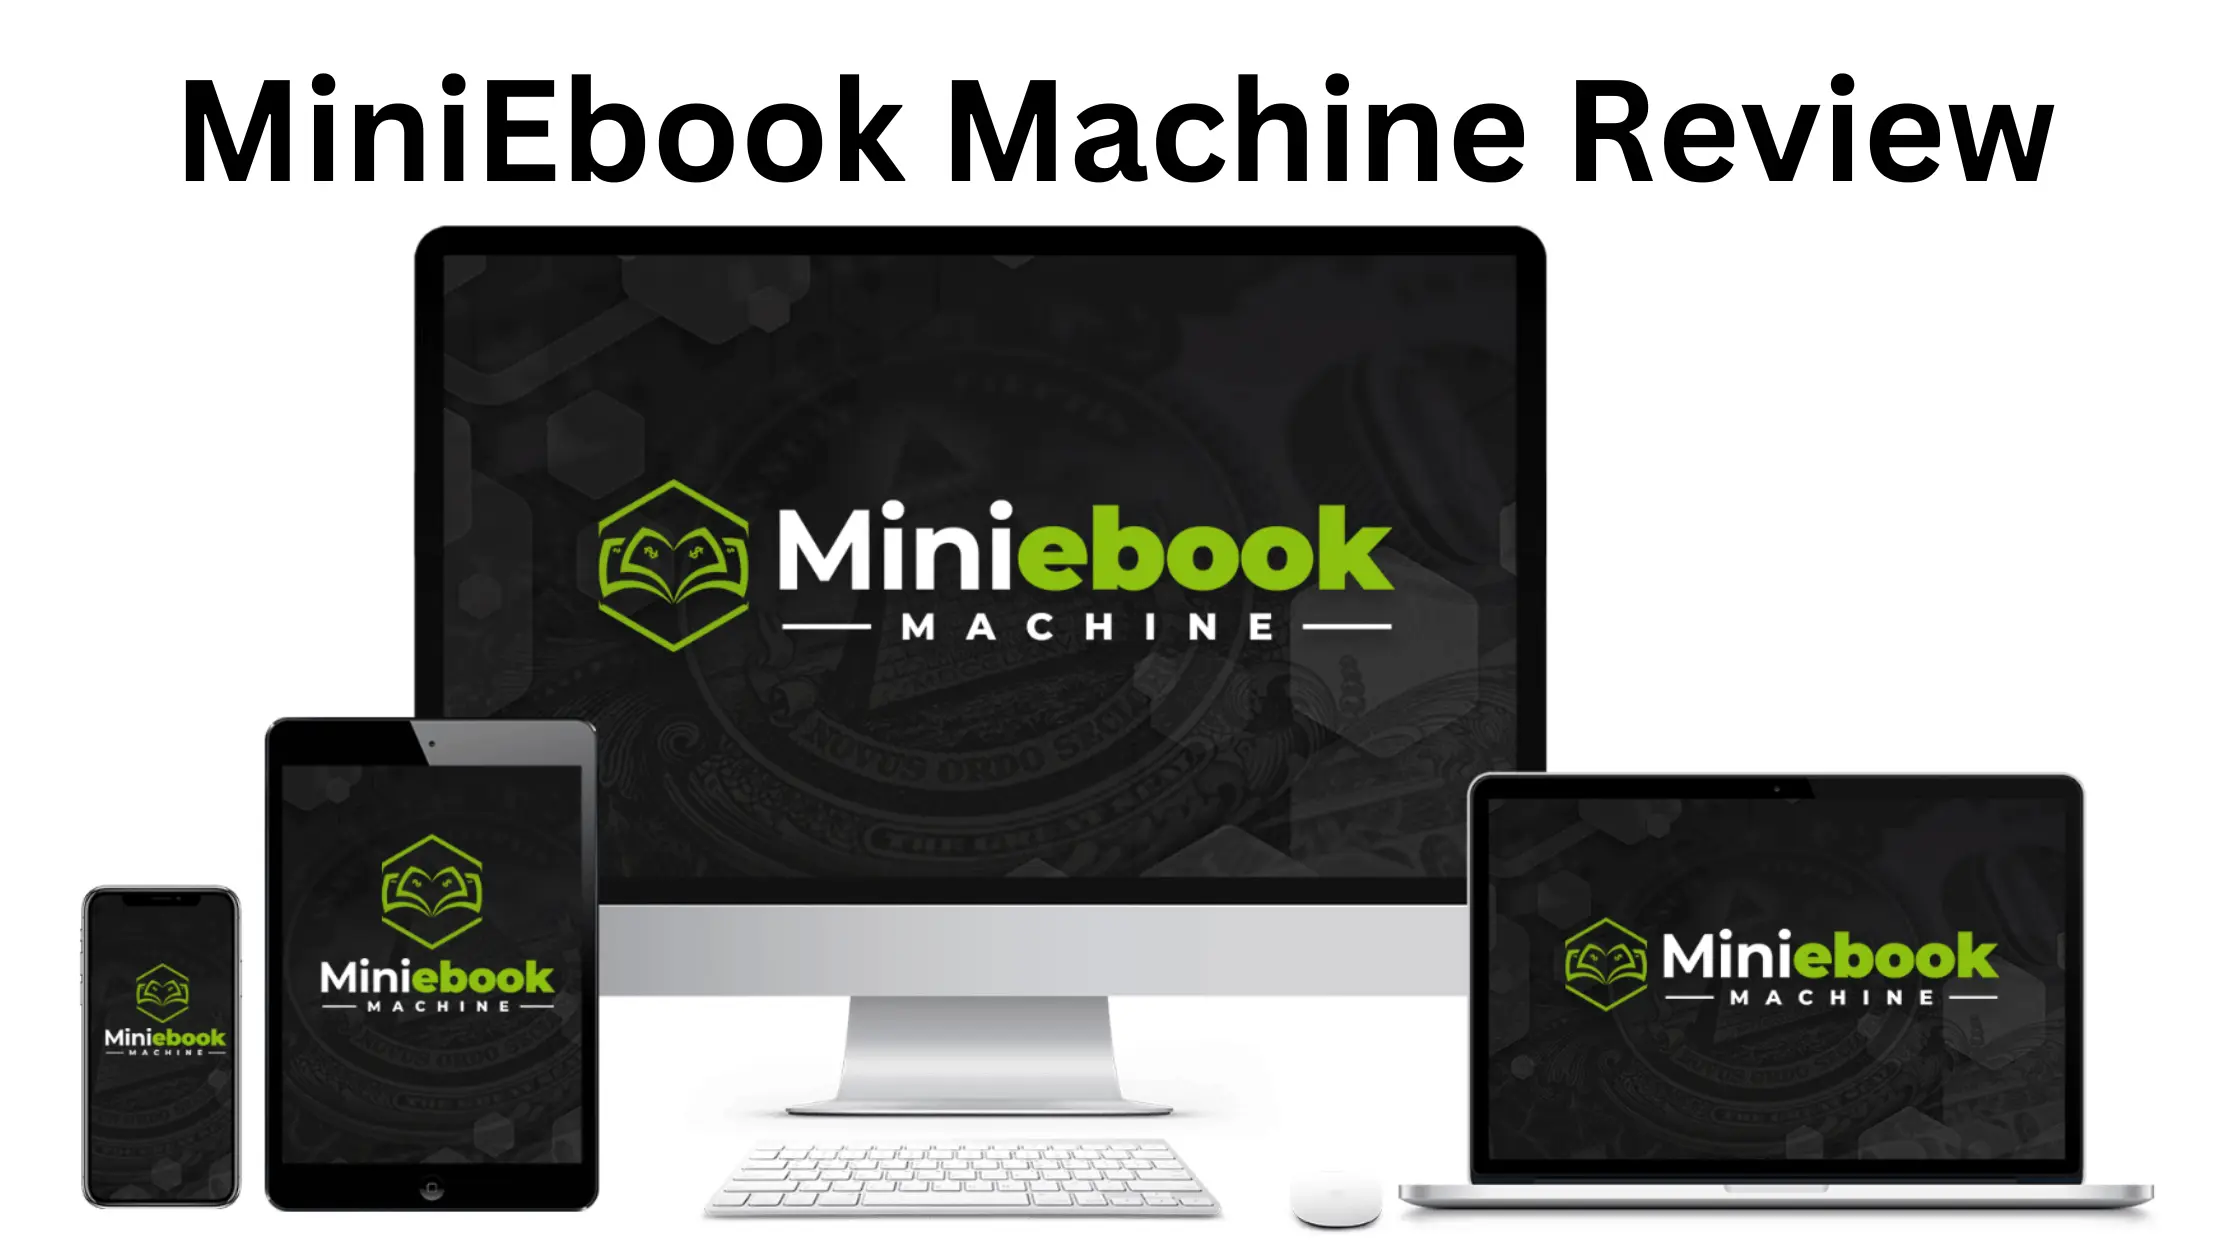 MiniEbook Machine Review